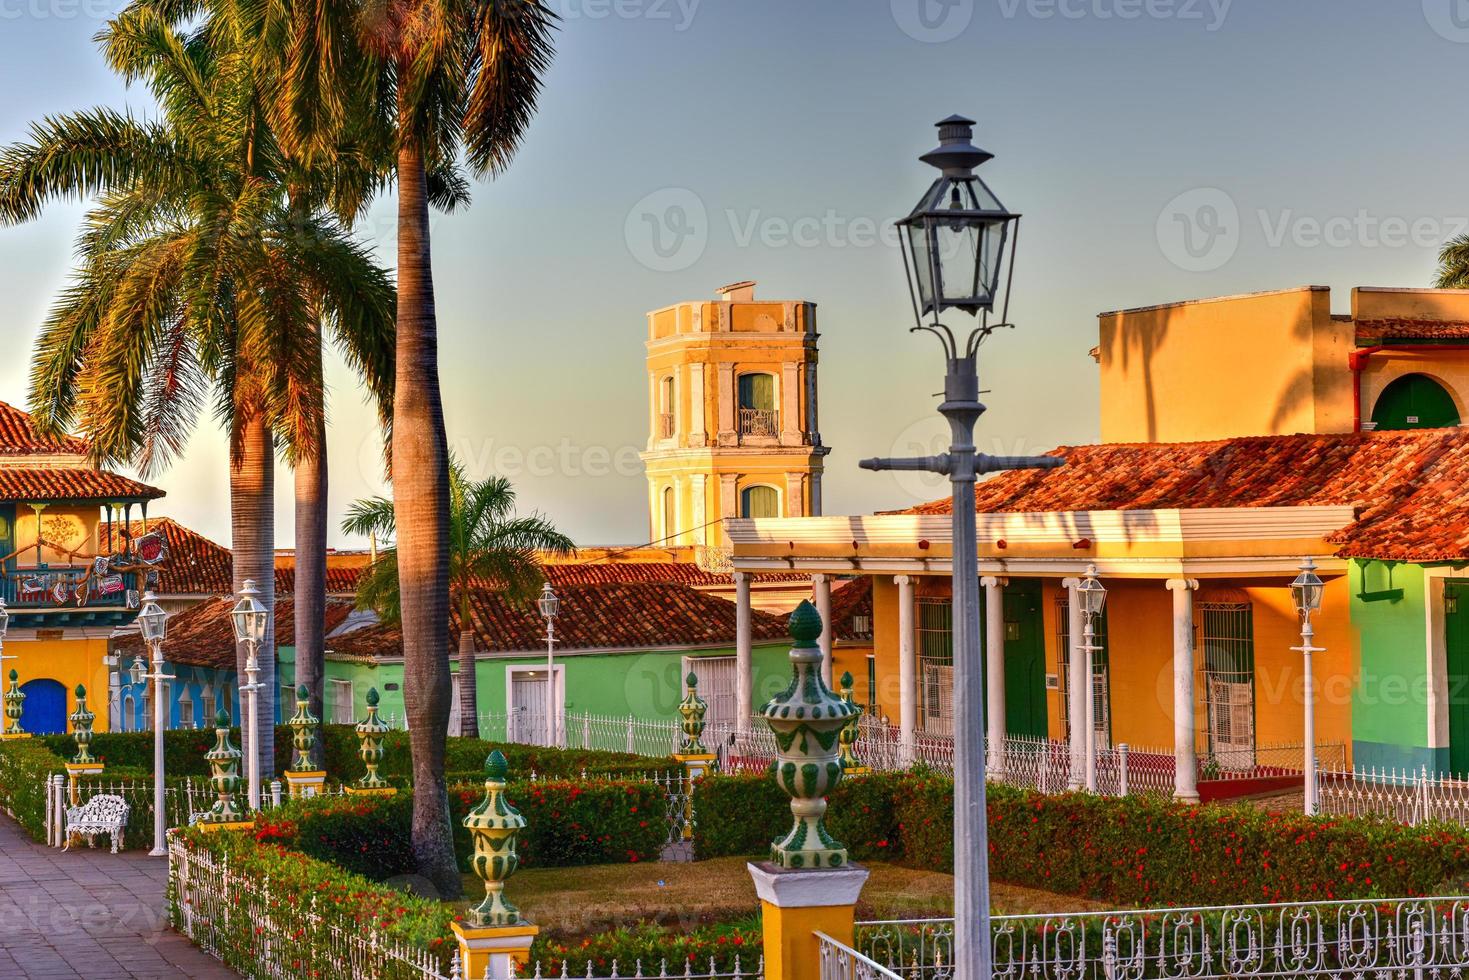 plein burgemeester in de centrum van Trinidad, Cuba, een UNESCO wereld erfgoed plaats. foto